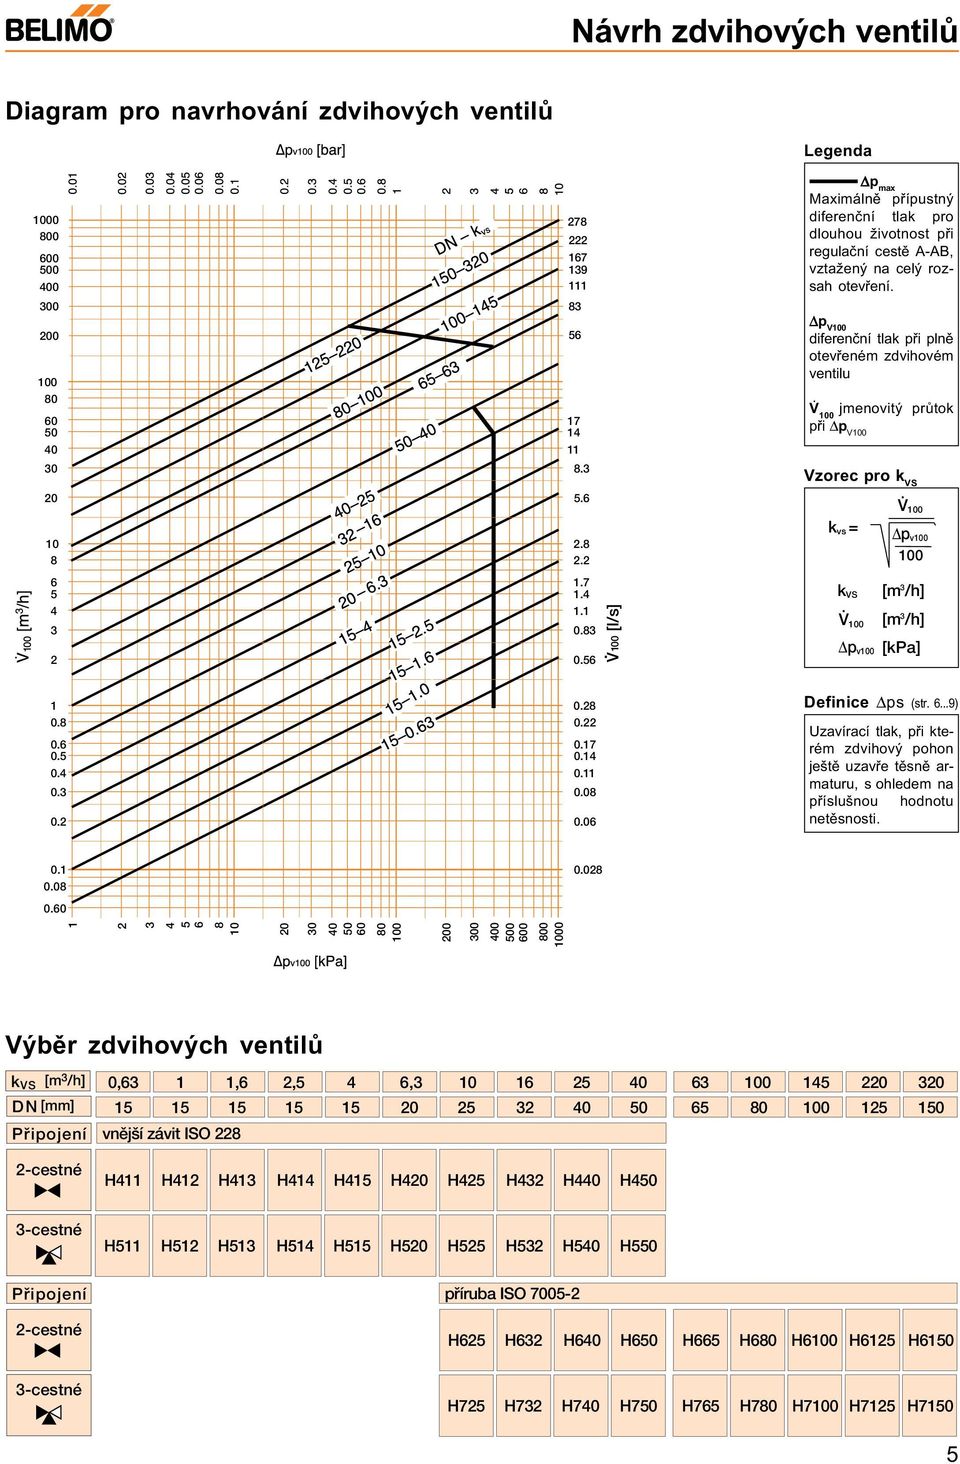 2 k vs = V p v 6 5 4 3 2 1.7 1.4 1.1 0.83 0.56 V. [l/s] k VS V p v [ 3 /h] [ 3 /h] [kpa] 1 0.8 0.6 0.5 0.4 0.3 0.2 0.28 0.22 0.17 0.14 0.11 0.08 0.06 efinice ps (str. 6...9) Uzavírací tlak, pøi které zdvihový pohon ještì uzavøe tìsnì araturu, s ohlede na pøíslušnou hodnotu netìsnosti.